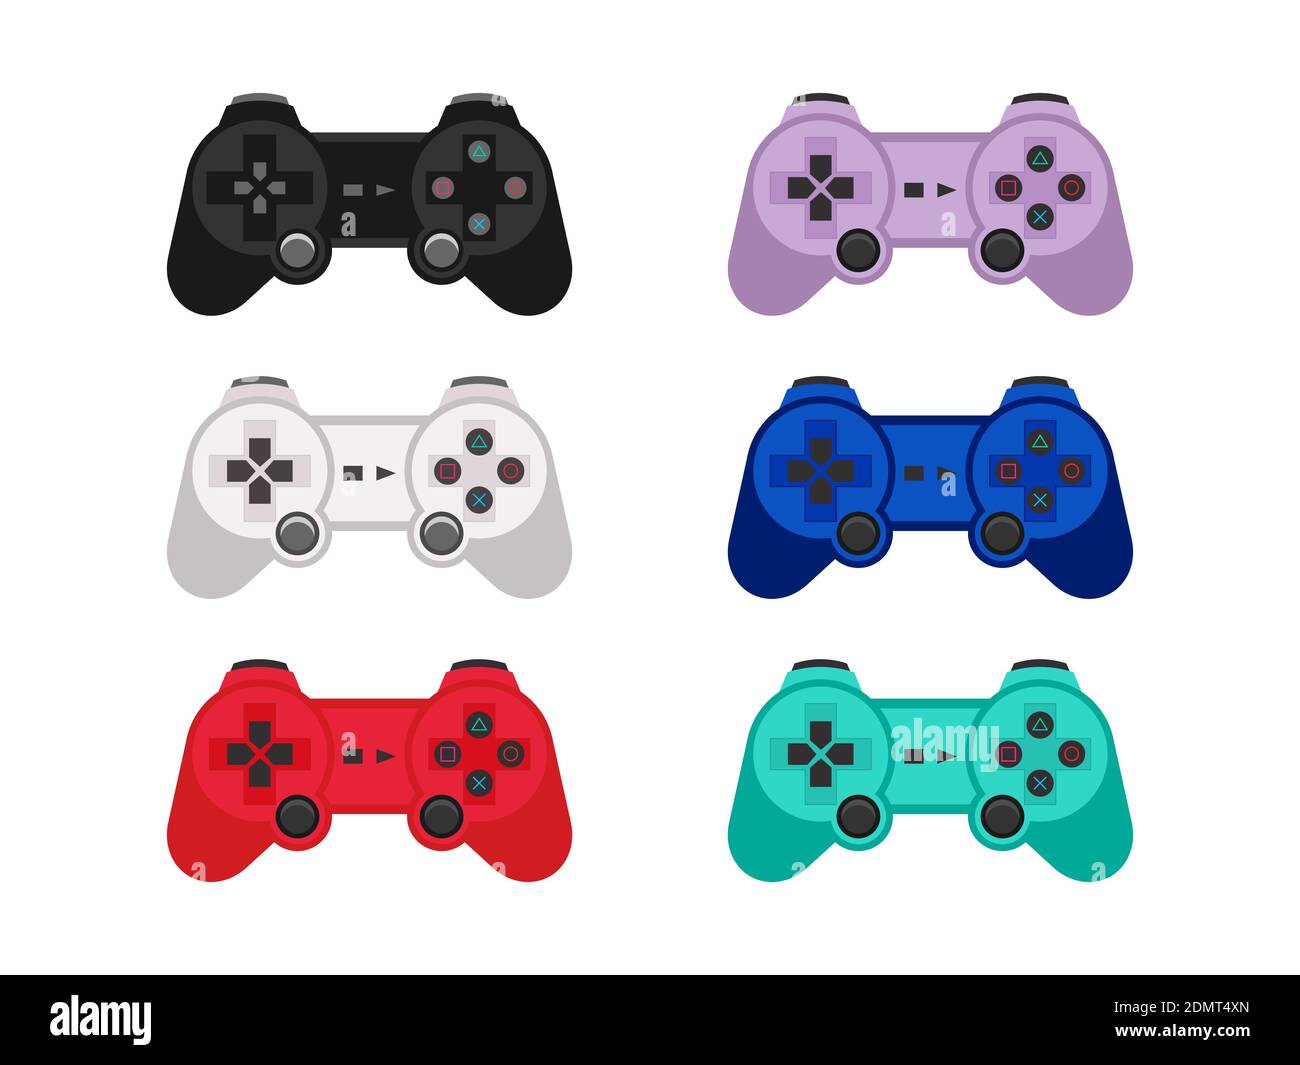 Controller per videogiochi. Collezione di sei diversi joystick colorati. Gamepad wireless per console o giochi per PC. Icona di gioco. Vettore Illustrazione Vettoriale